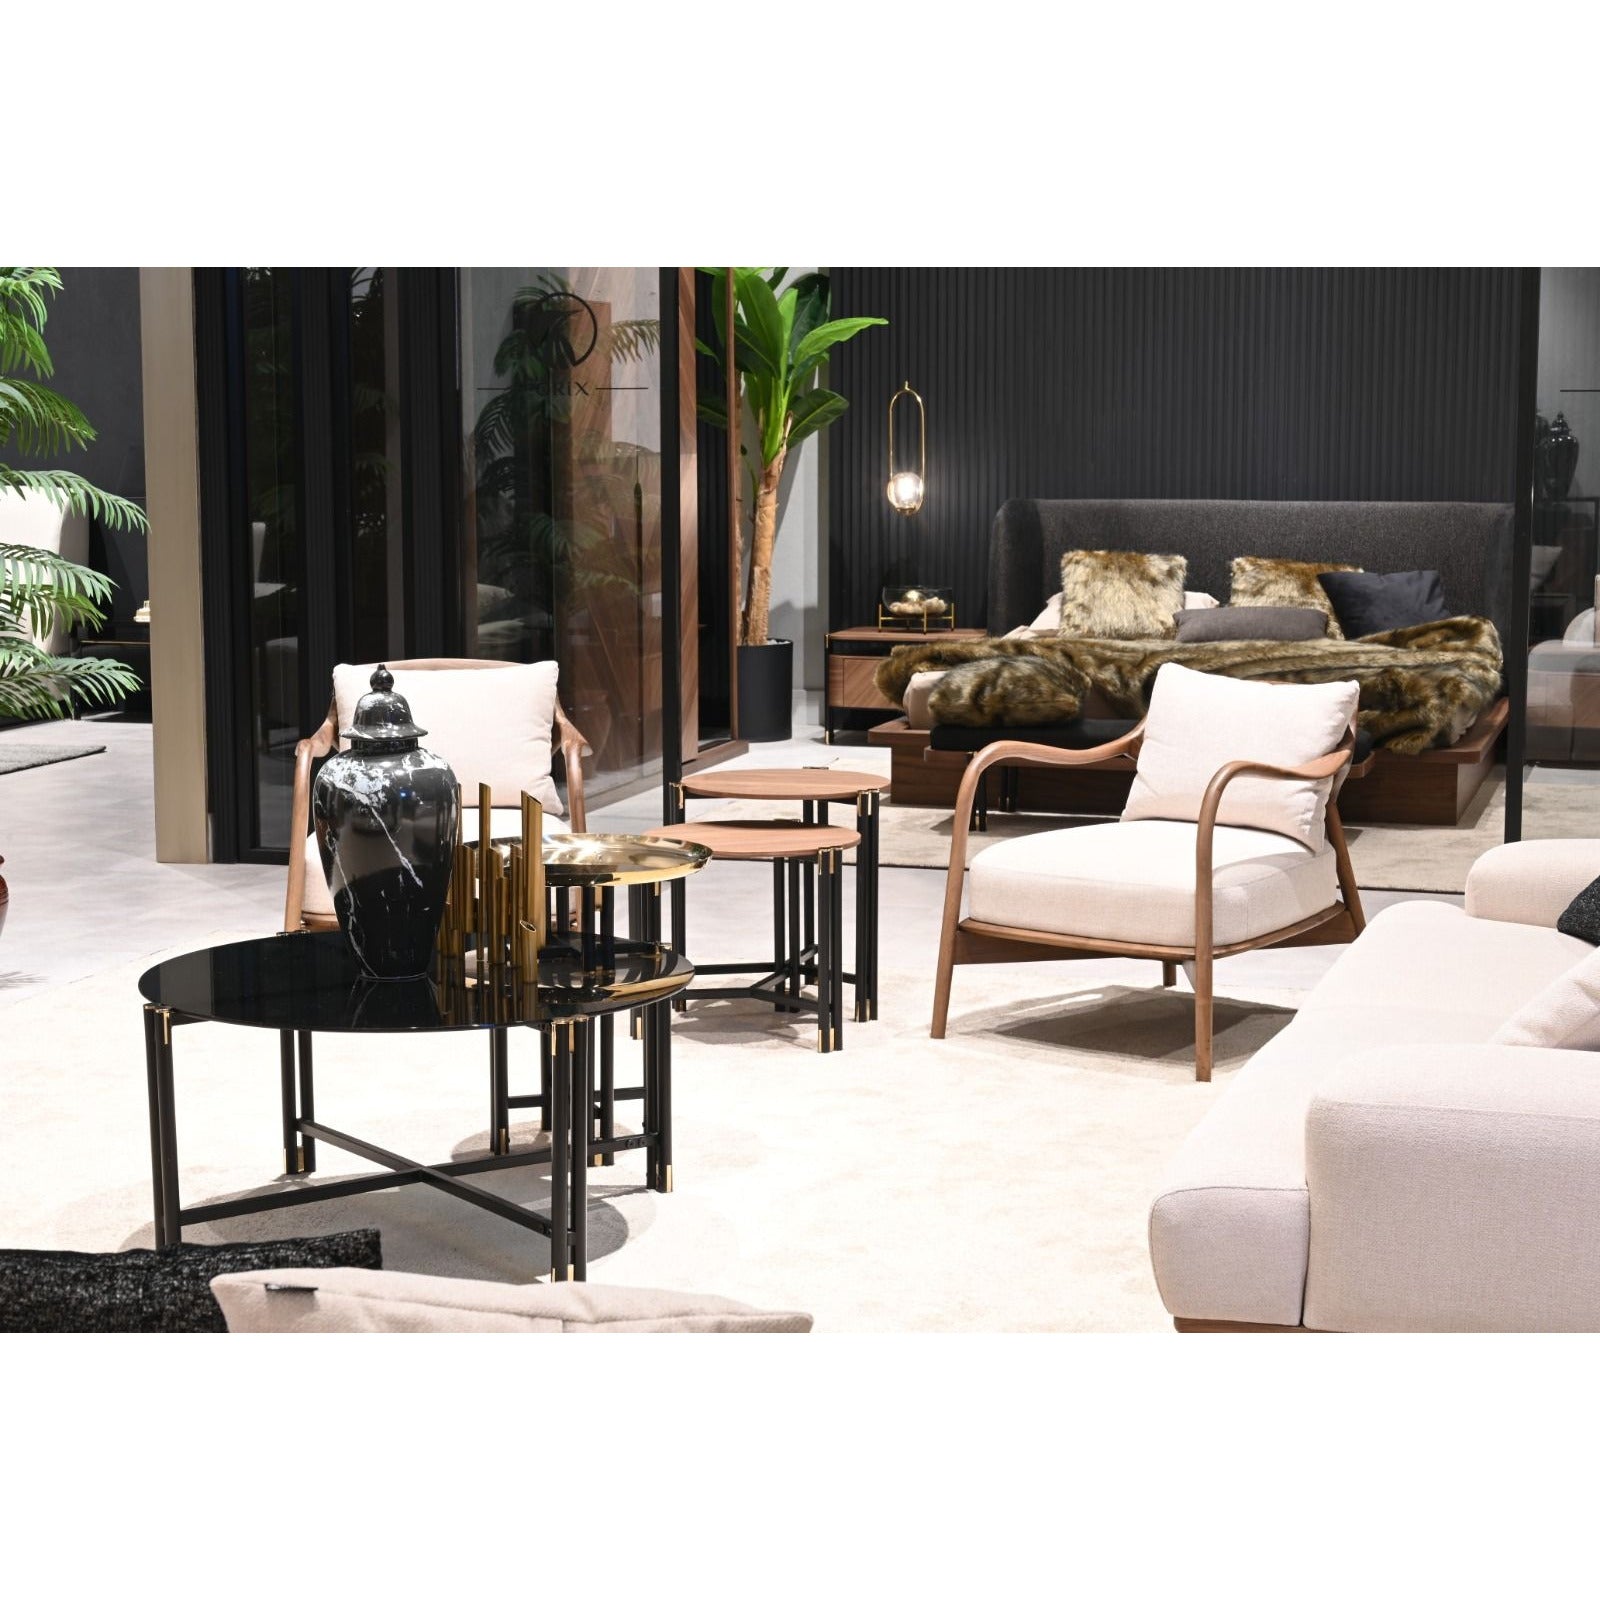 Noble Fåtölj - LINE Furniture Group